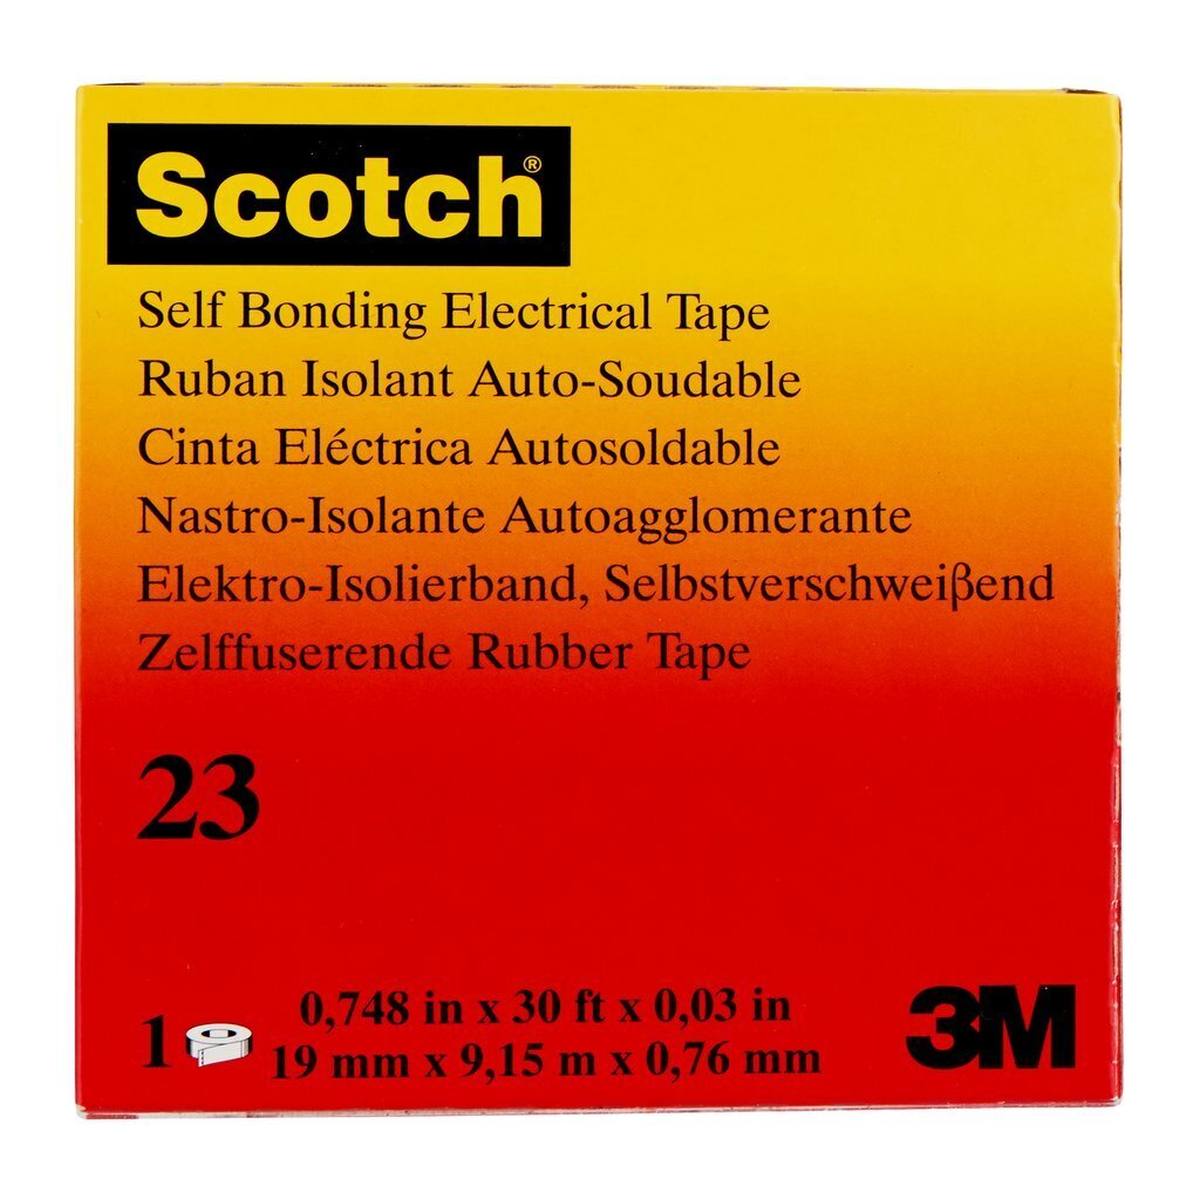 3M Scotch 23 Selbstverschweißendes Ethylen-Propylen-Kautschuk-Band, 19 mm x 9,15 m